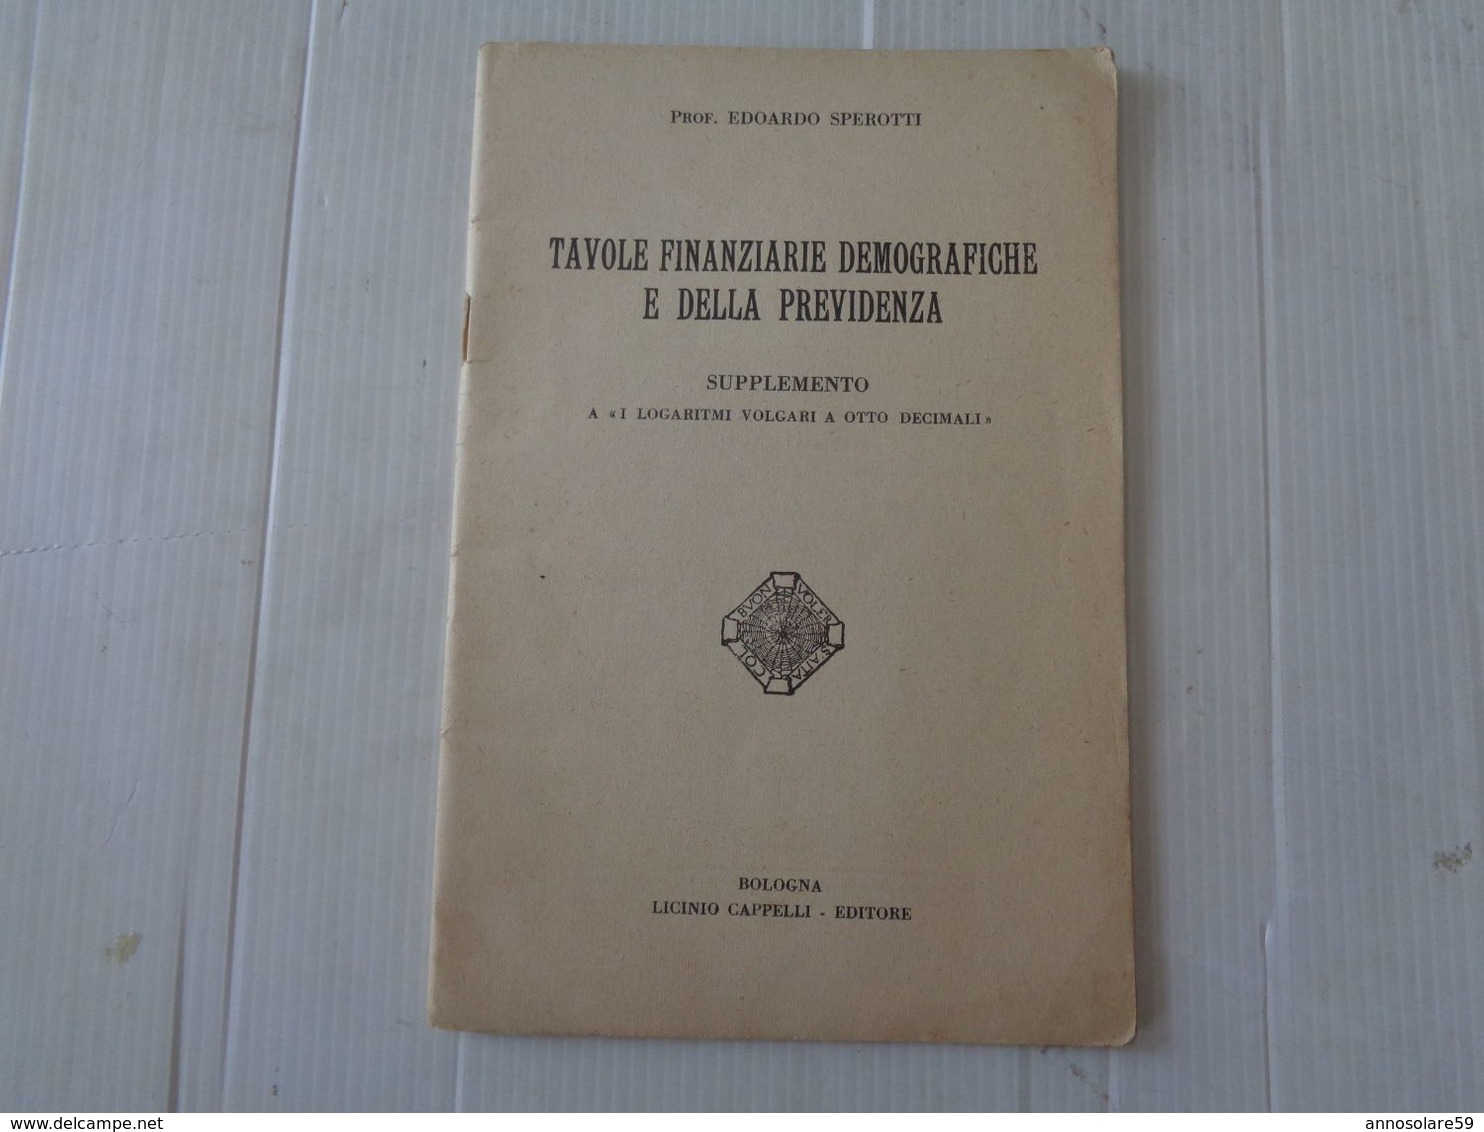 LIBRO, (PROF. EDOARDO SPEROTTI) TAVOLE FINANZIARIE DEMOGRAFICHE E DELLA PREVIDENZA - 1934 - LEGGI - Mathematics & Physics